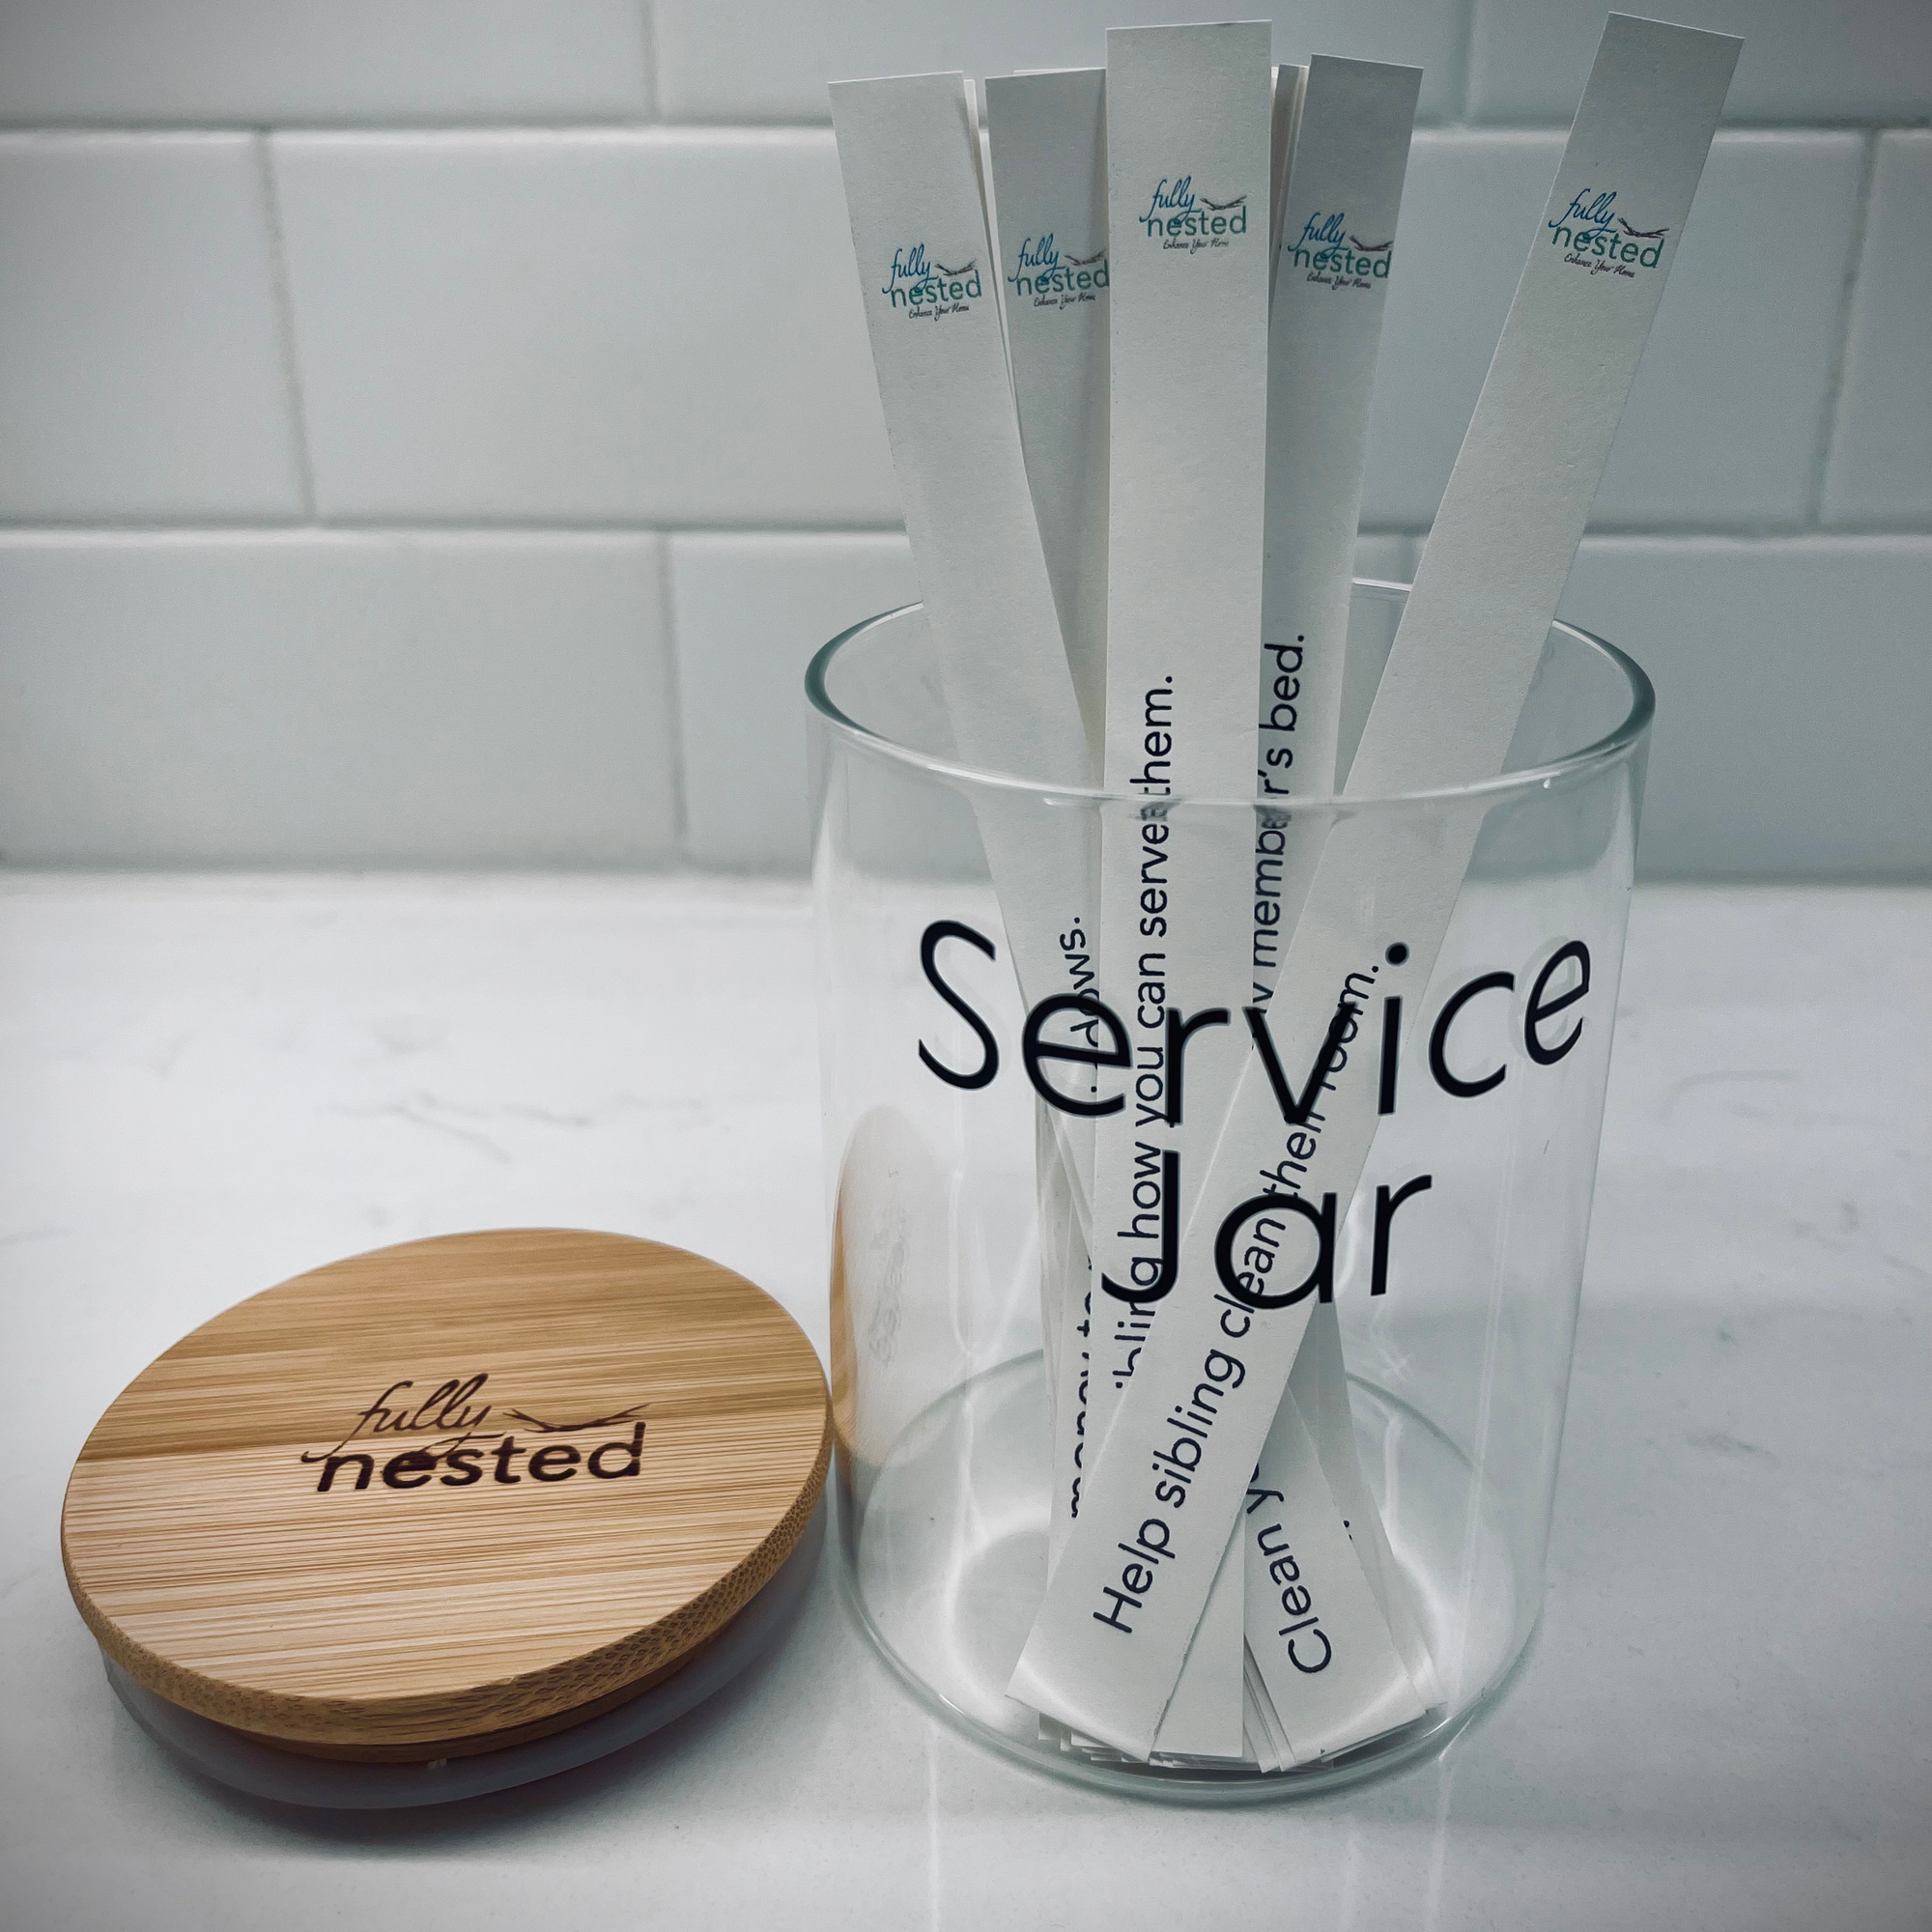 Service Jar Ideas -Free Digital Download